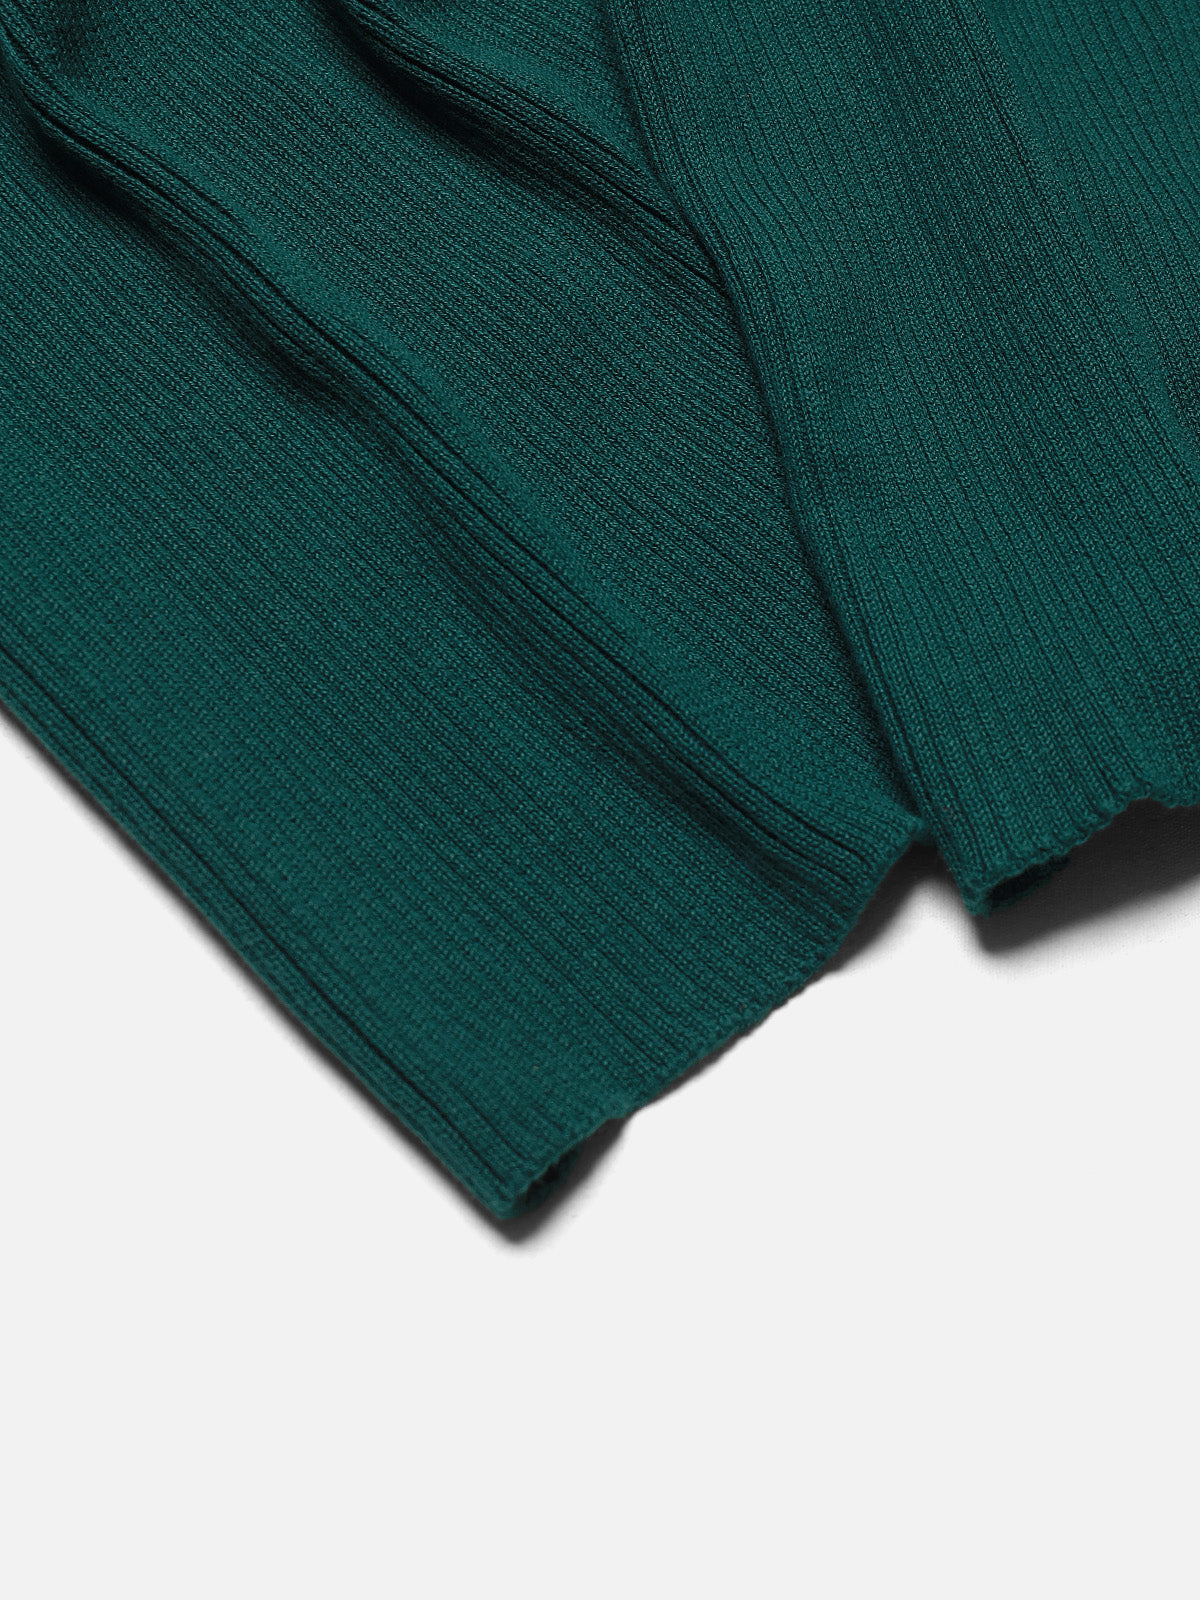 Dark Green Knitted Muffler - FAMM23-019